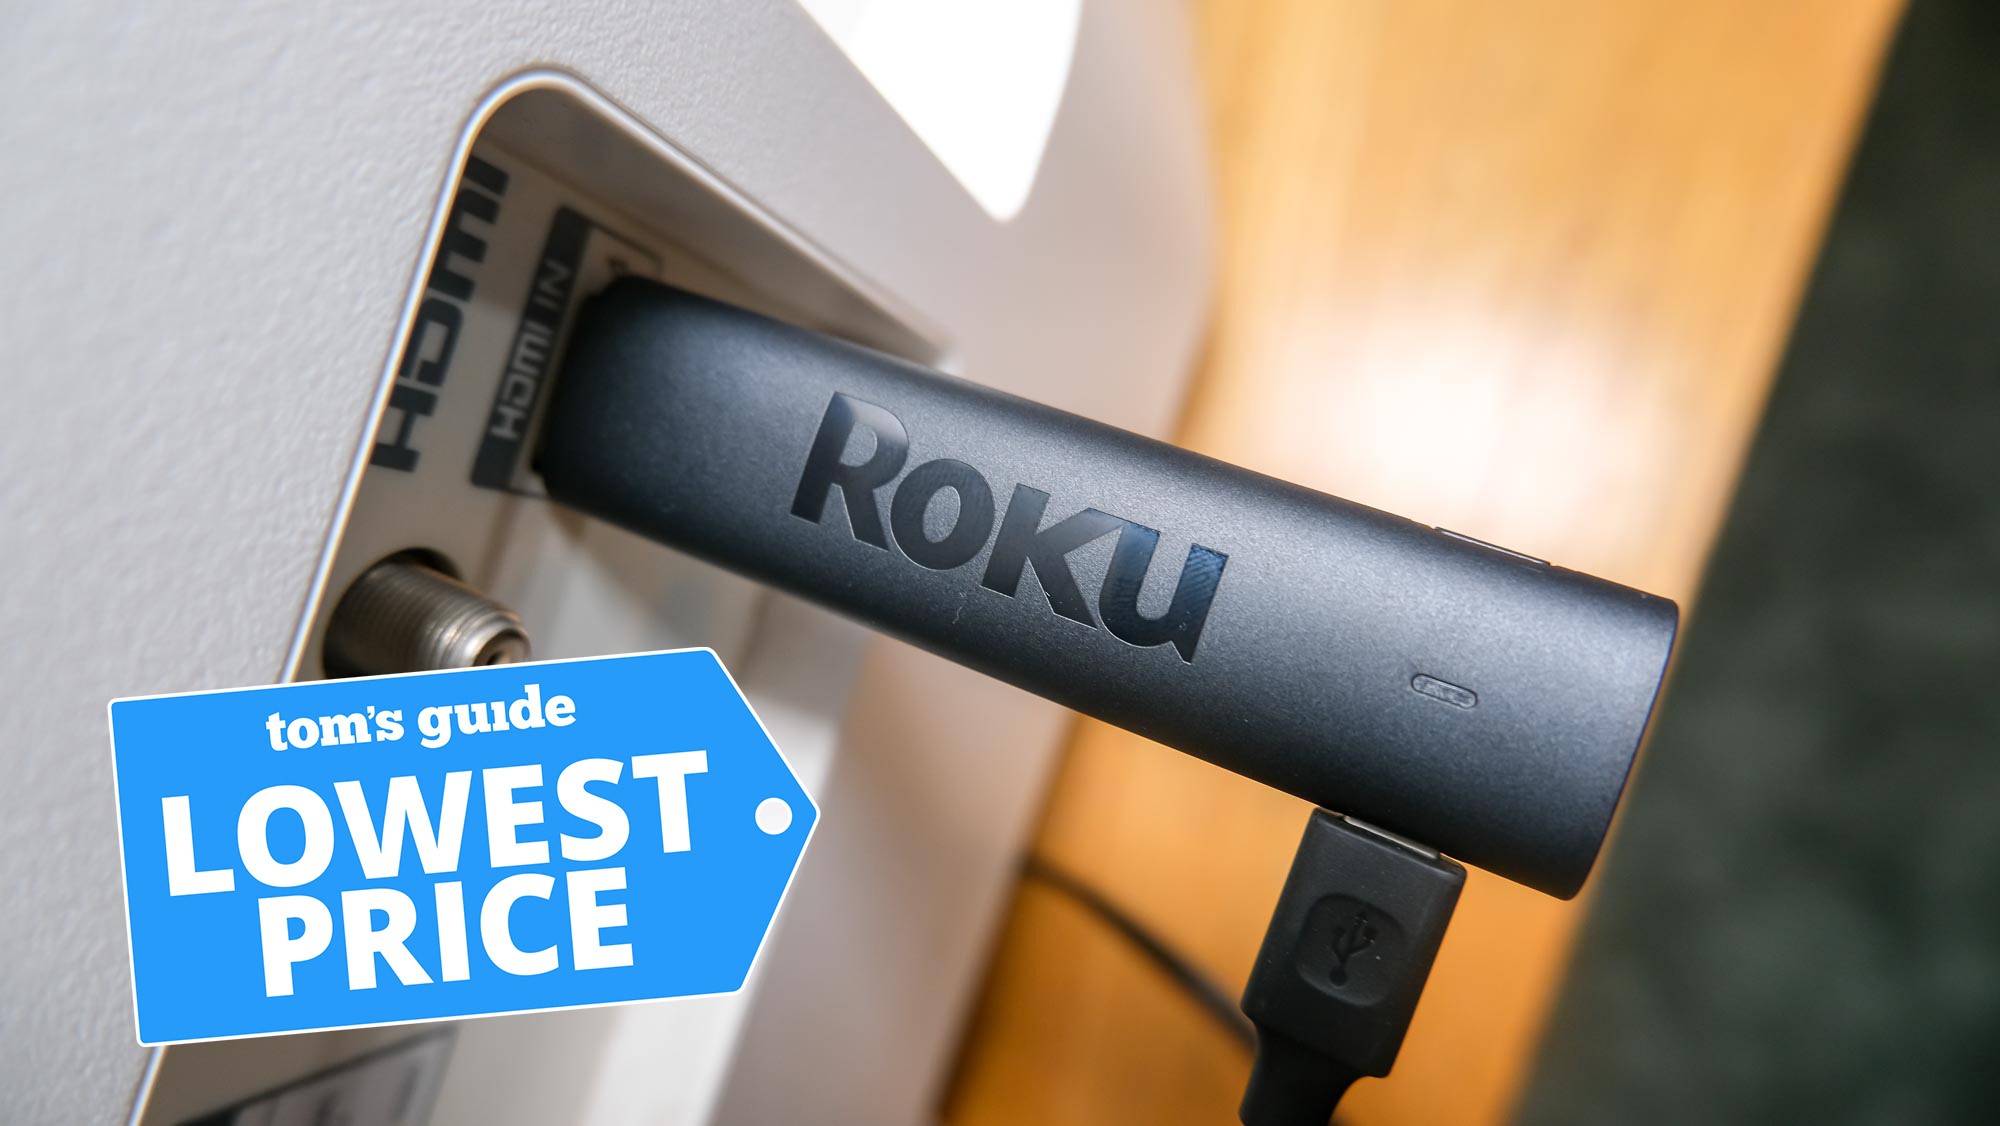 El Roku Streaming Stick 4K conectado a un puerto HDMI con un gráfico de precios más bajos de la Guía de Tom en la parte superior